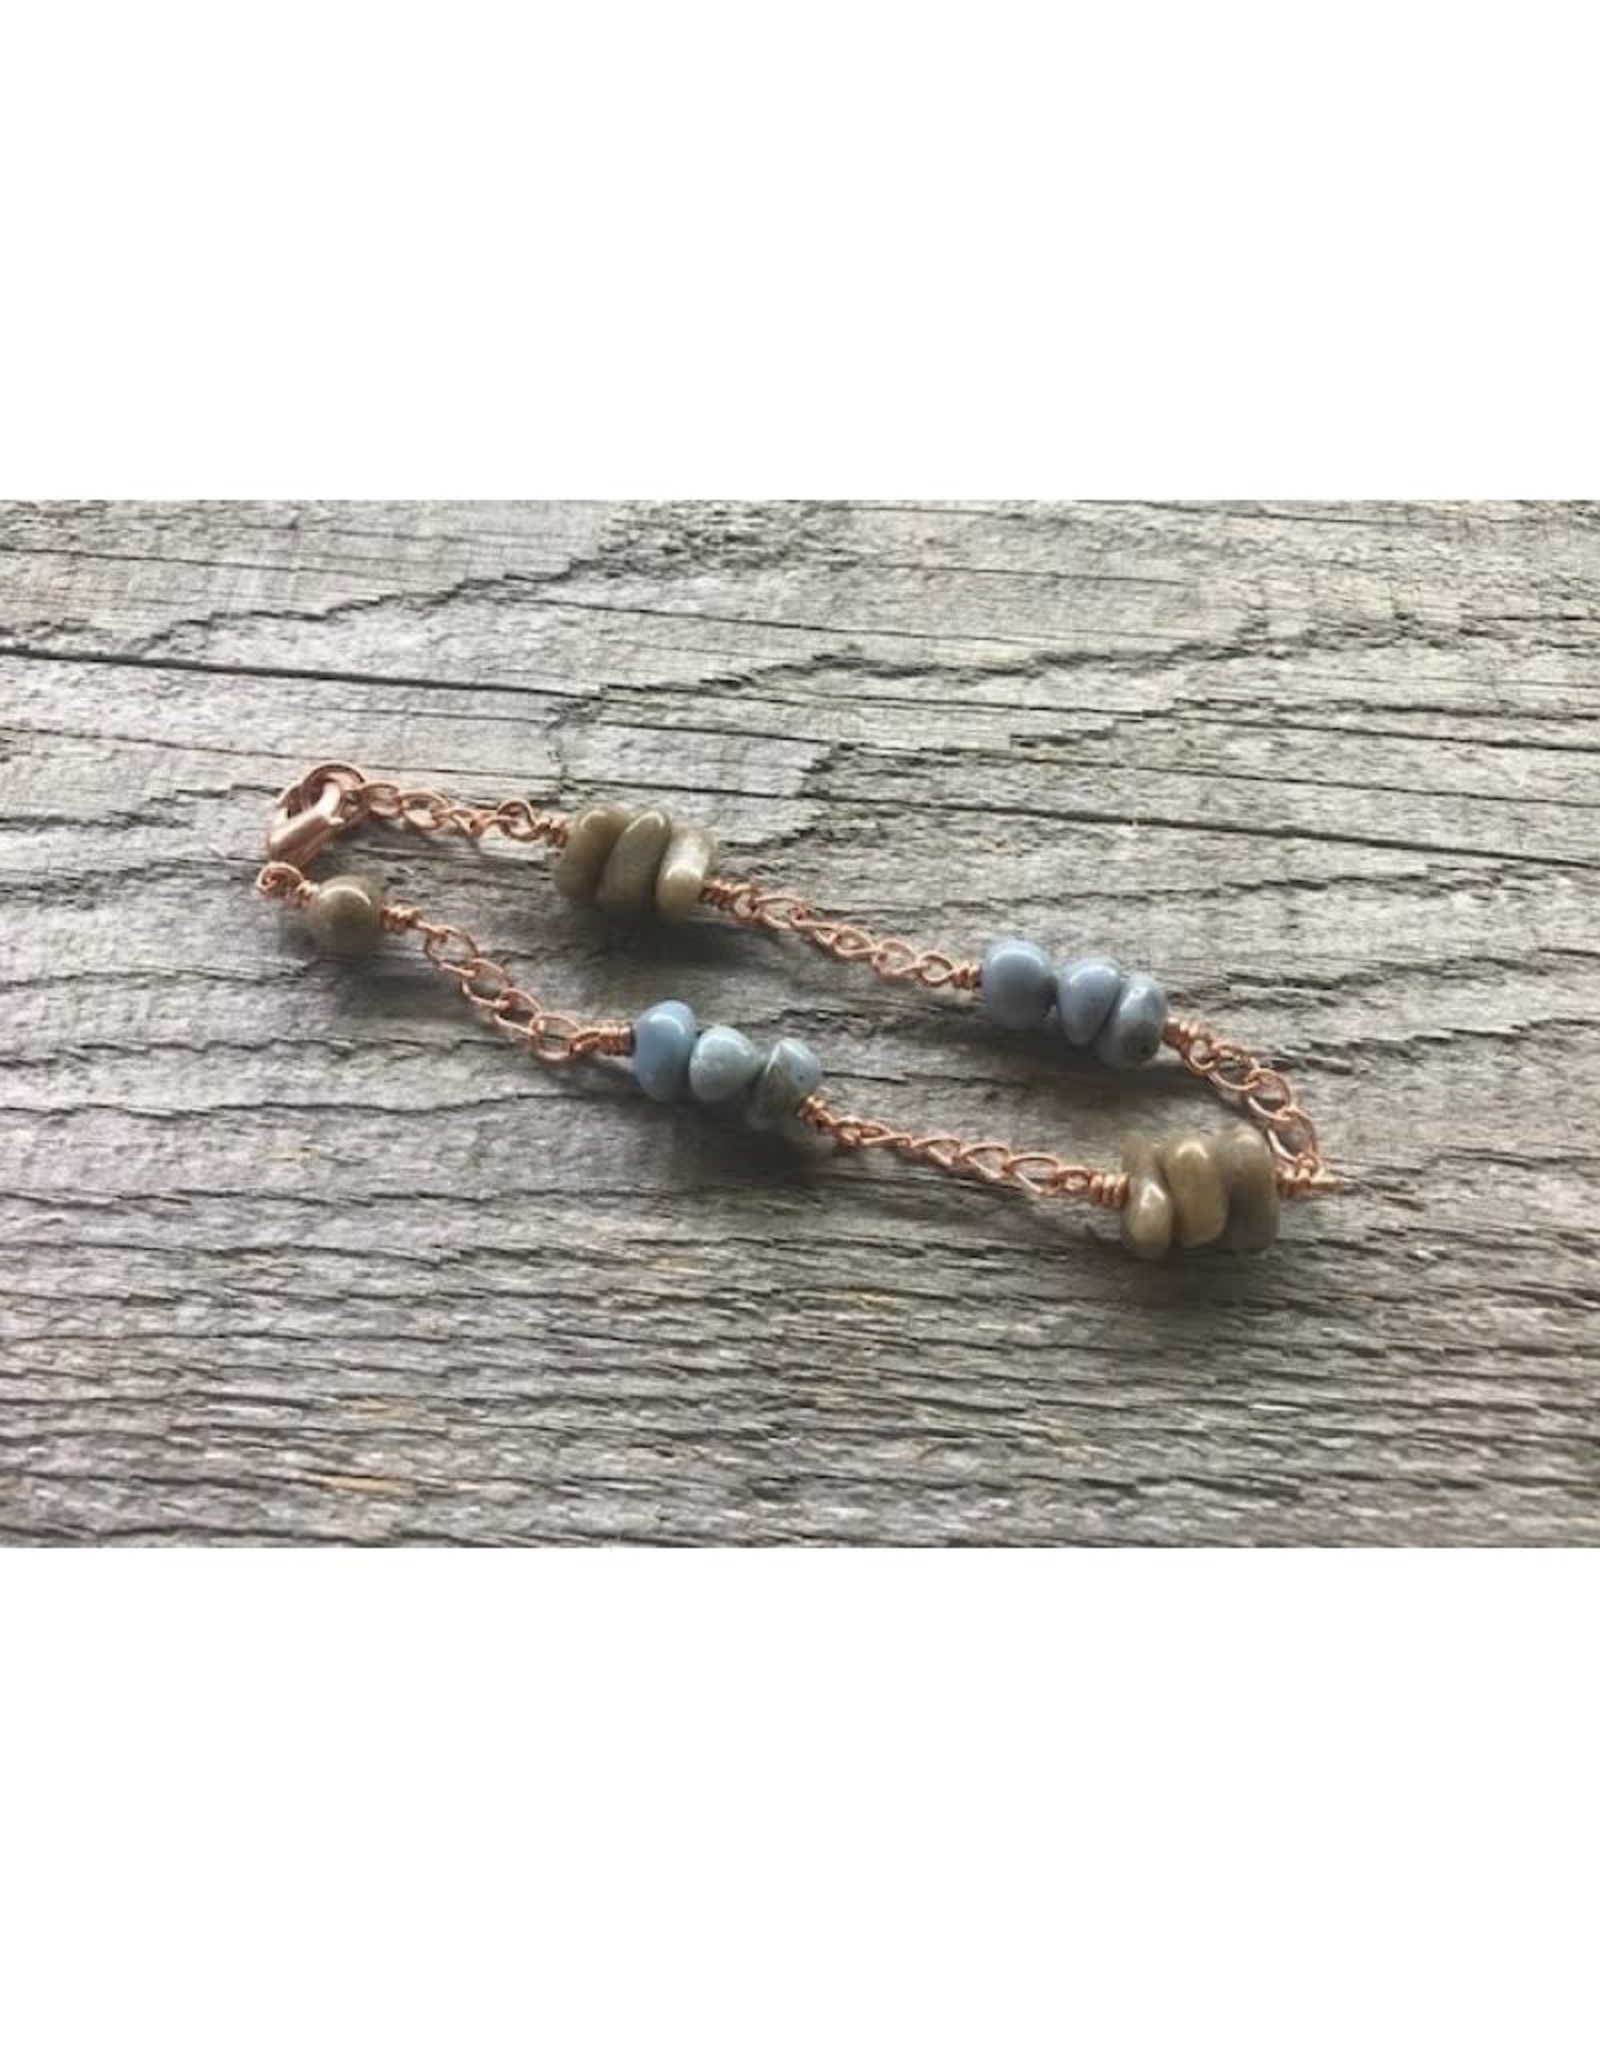 Bracelet - Leland Blue & Petoskey Stone on Copper